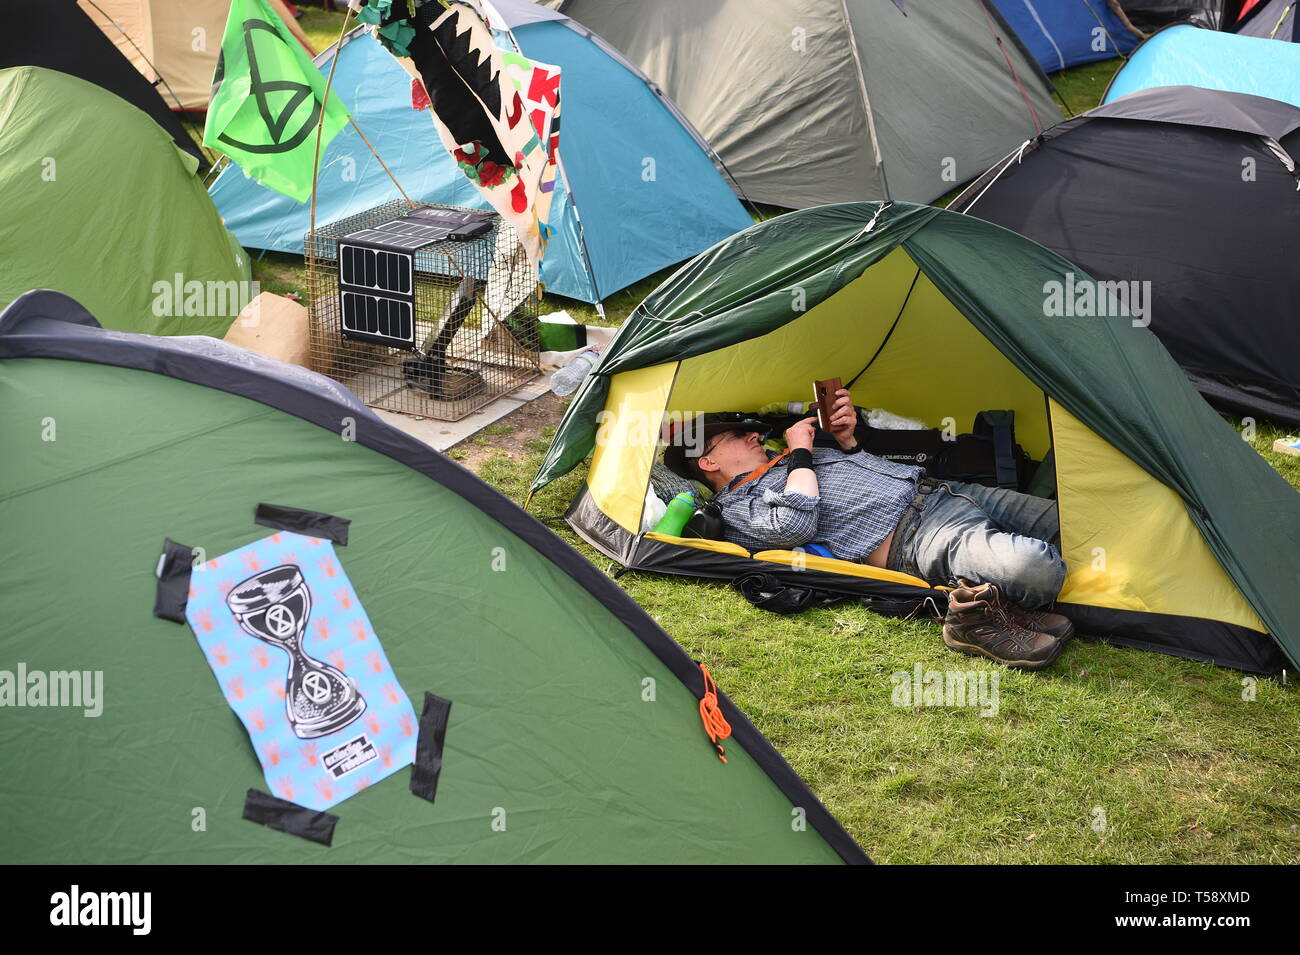 Un uomo riposa nella sua tenda nella ribellione di estinzione (XR) camp in Marble Arch, Londra. Più di mille persone sono state arrestate durante una settimana di cambiamenti climatici proteste a Londra come la polizia ha autorizzato i blocchi stradali responsabili per interruzioni nella capitale. Foto Stock